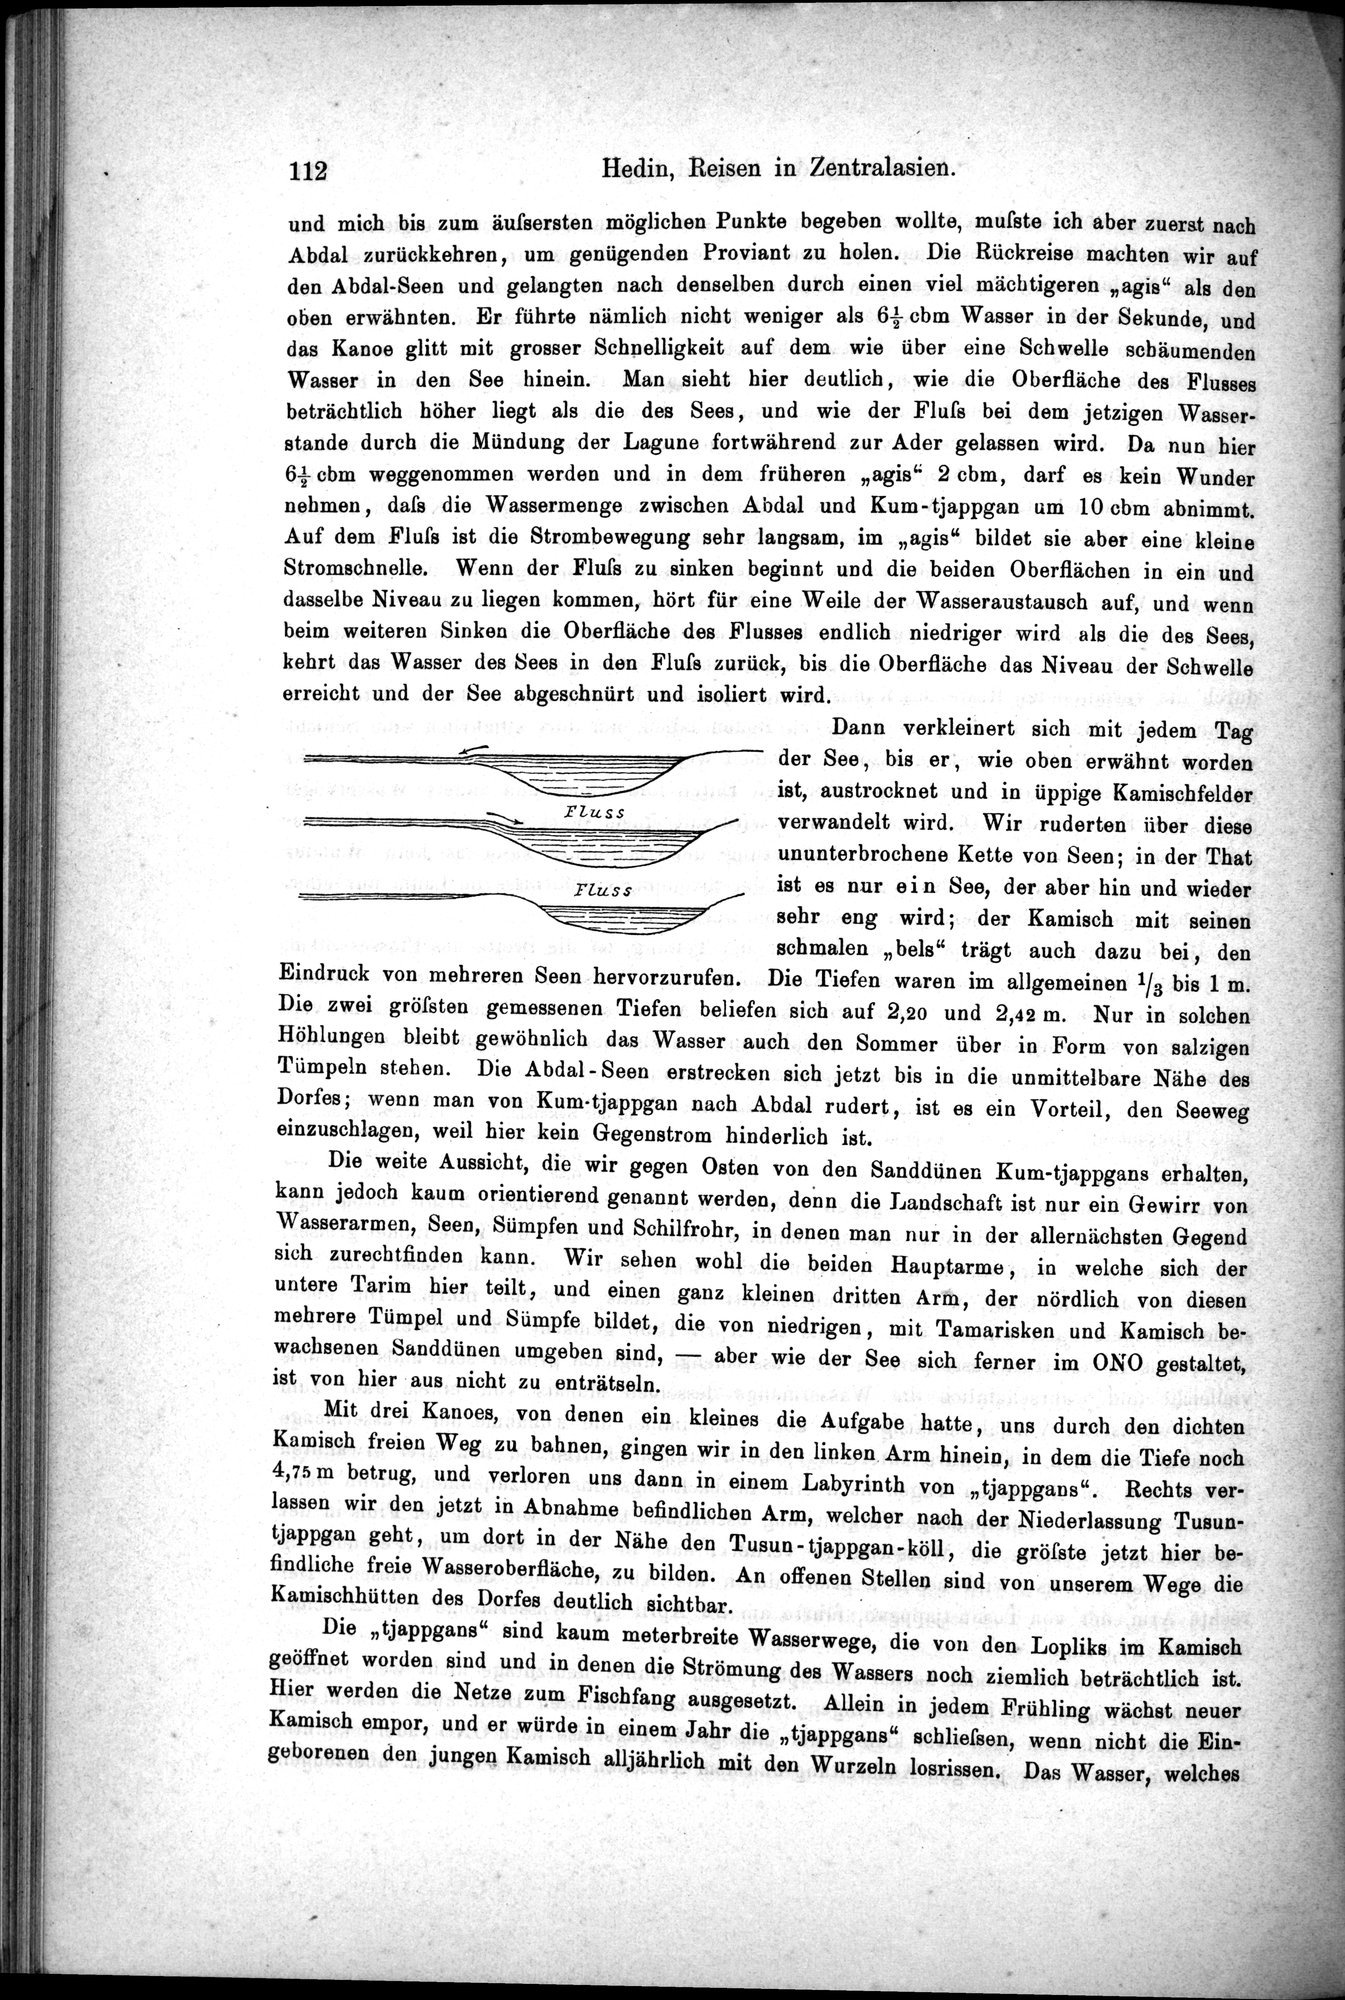 Die Geographische-Wissenschaftlichen Ergebnisse meiner Reisen in Zentralasien, 1894-1897 : vol.1 / Page 124 (Grayscale High Resolution Image)